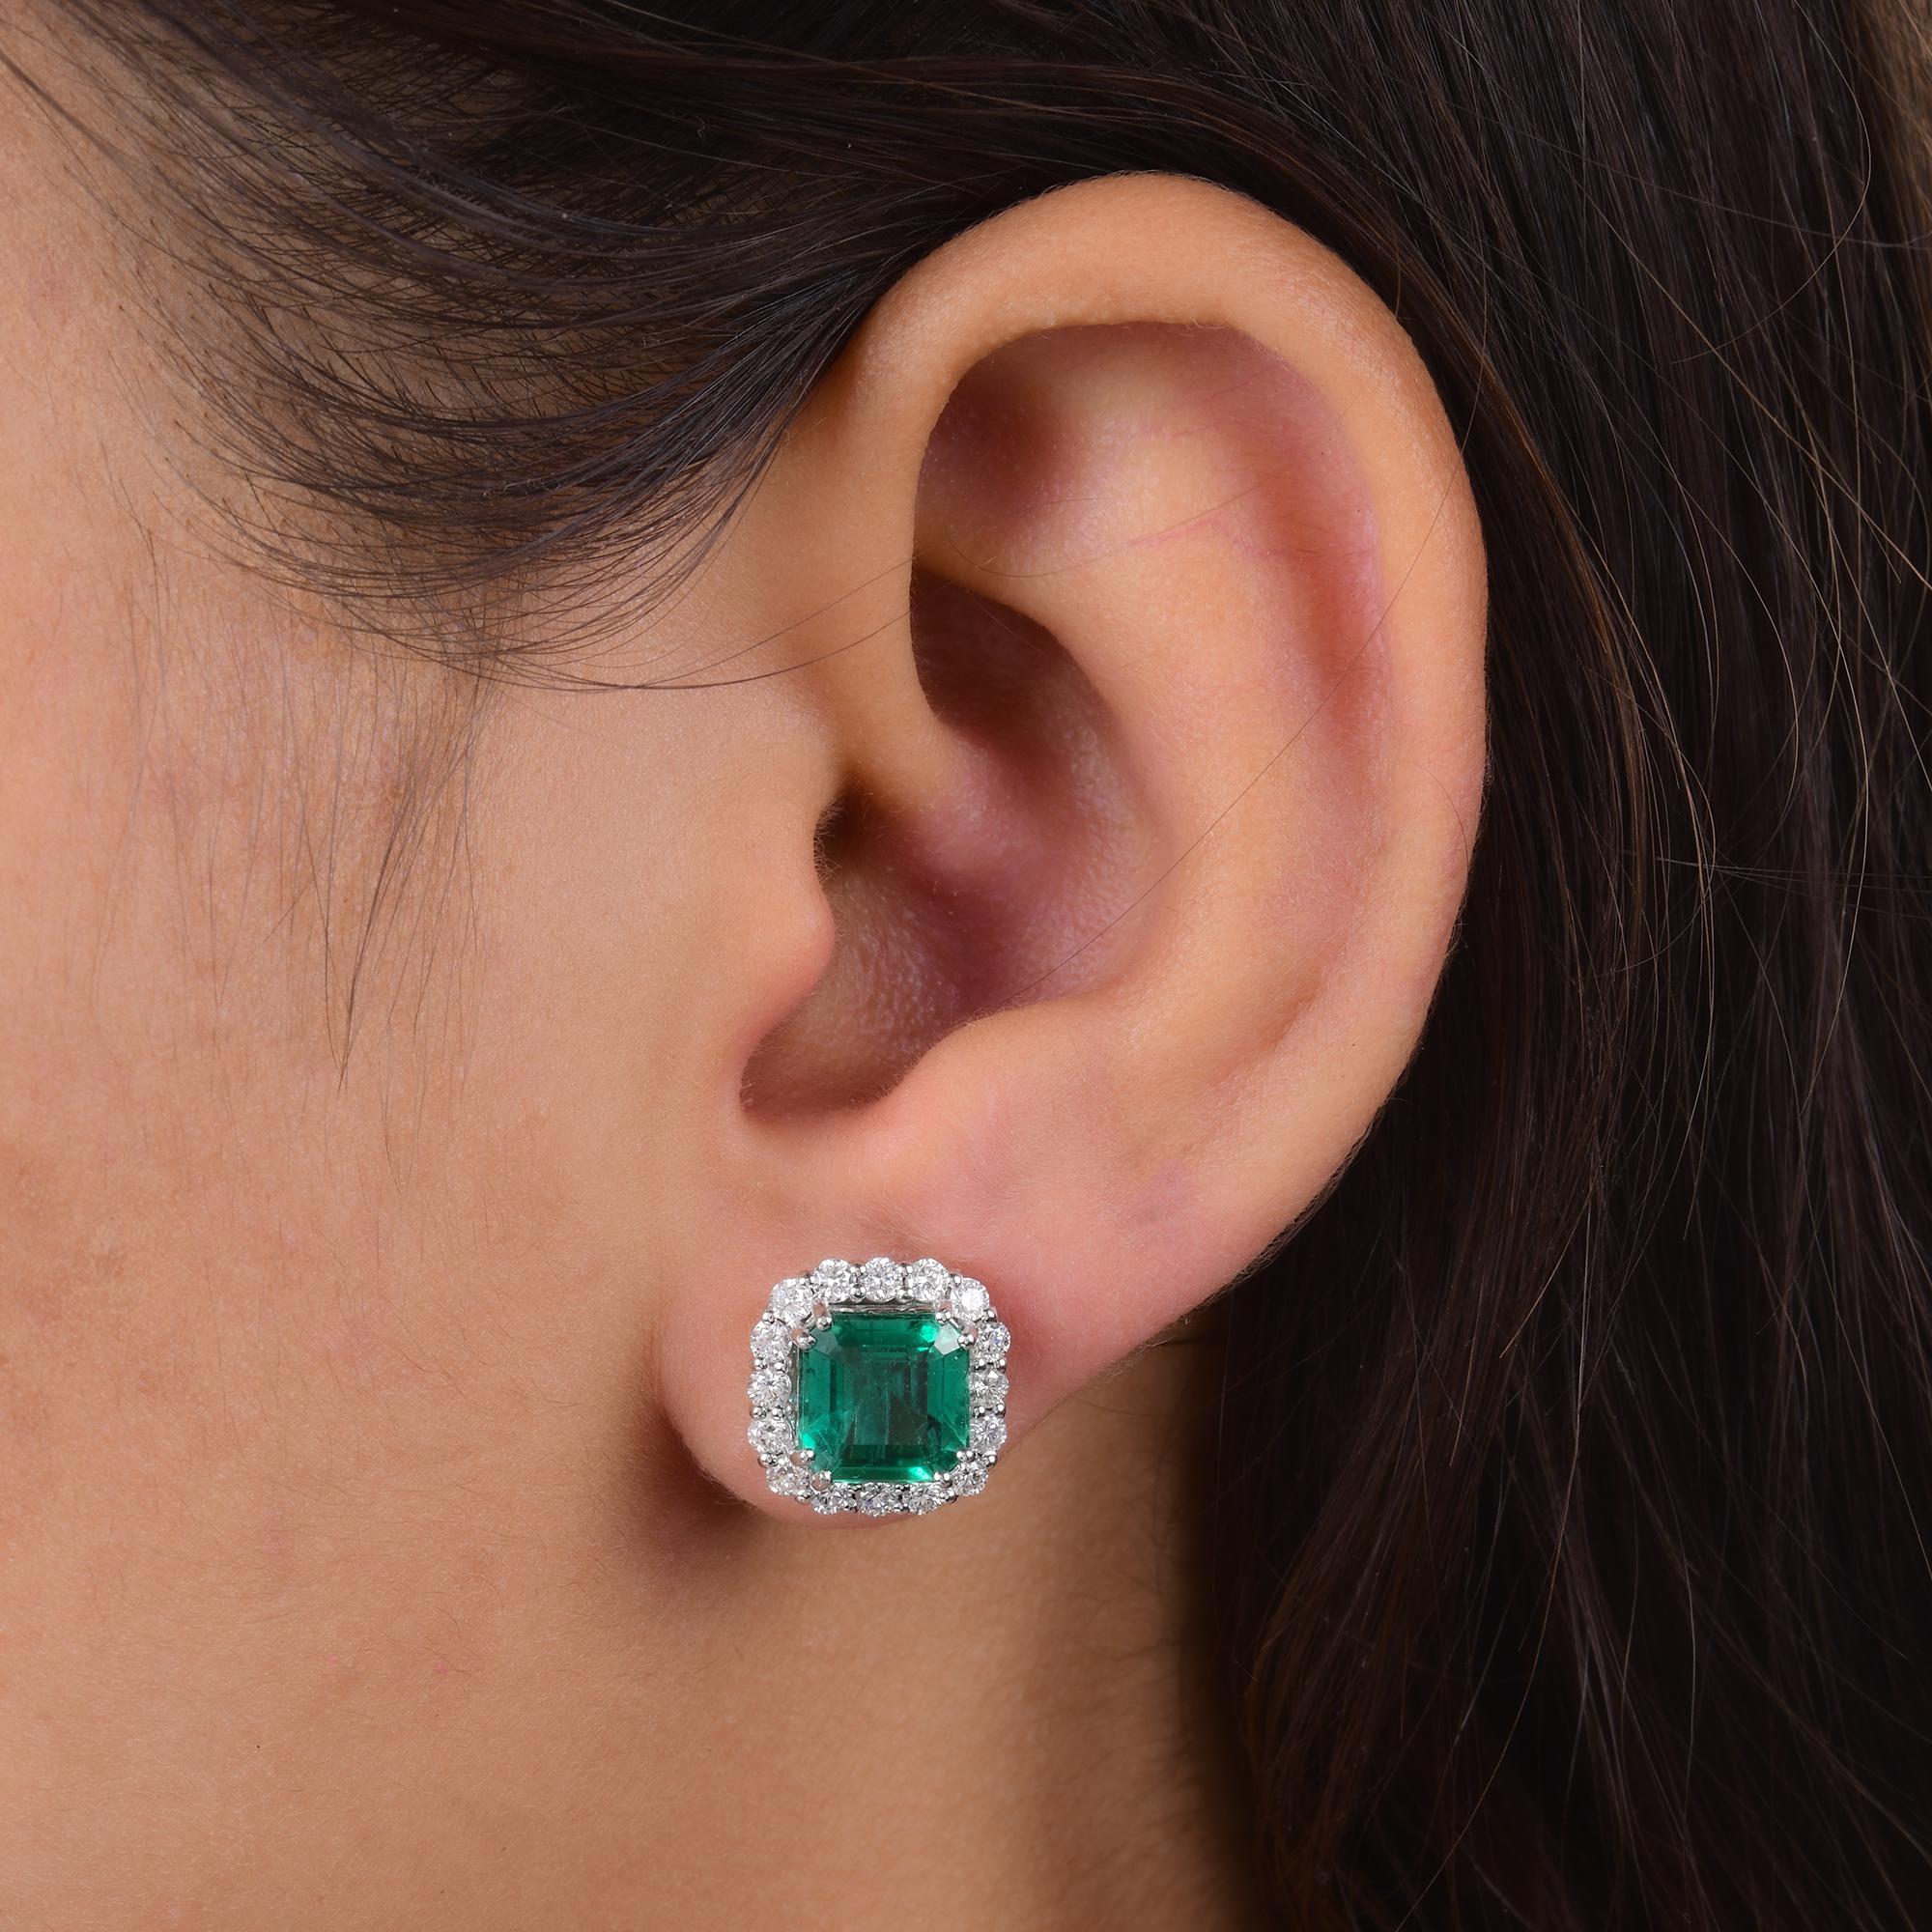 Emerald Cut Zambian Emerald Gemstone Stud Earrings Diamond 18 Karat White Gold Fine Jewelry For Sale